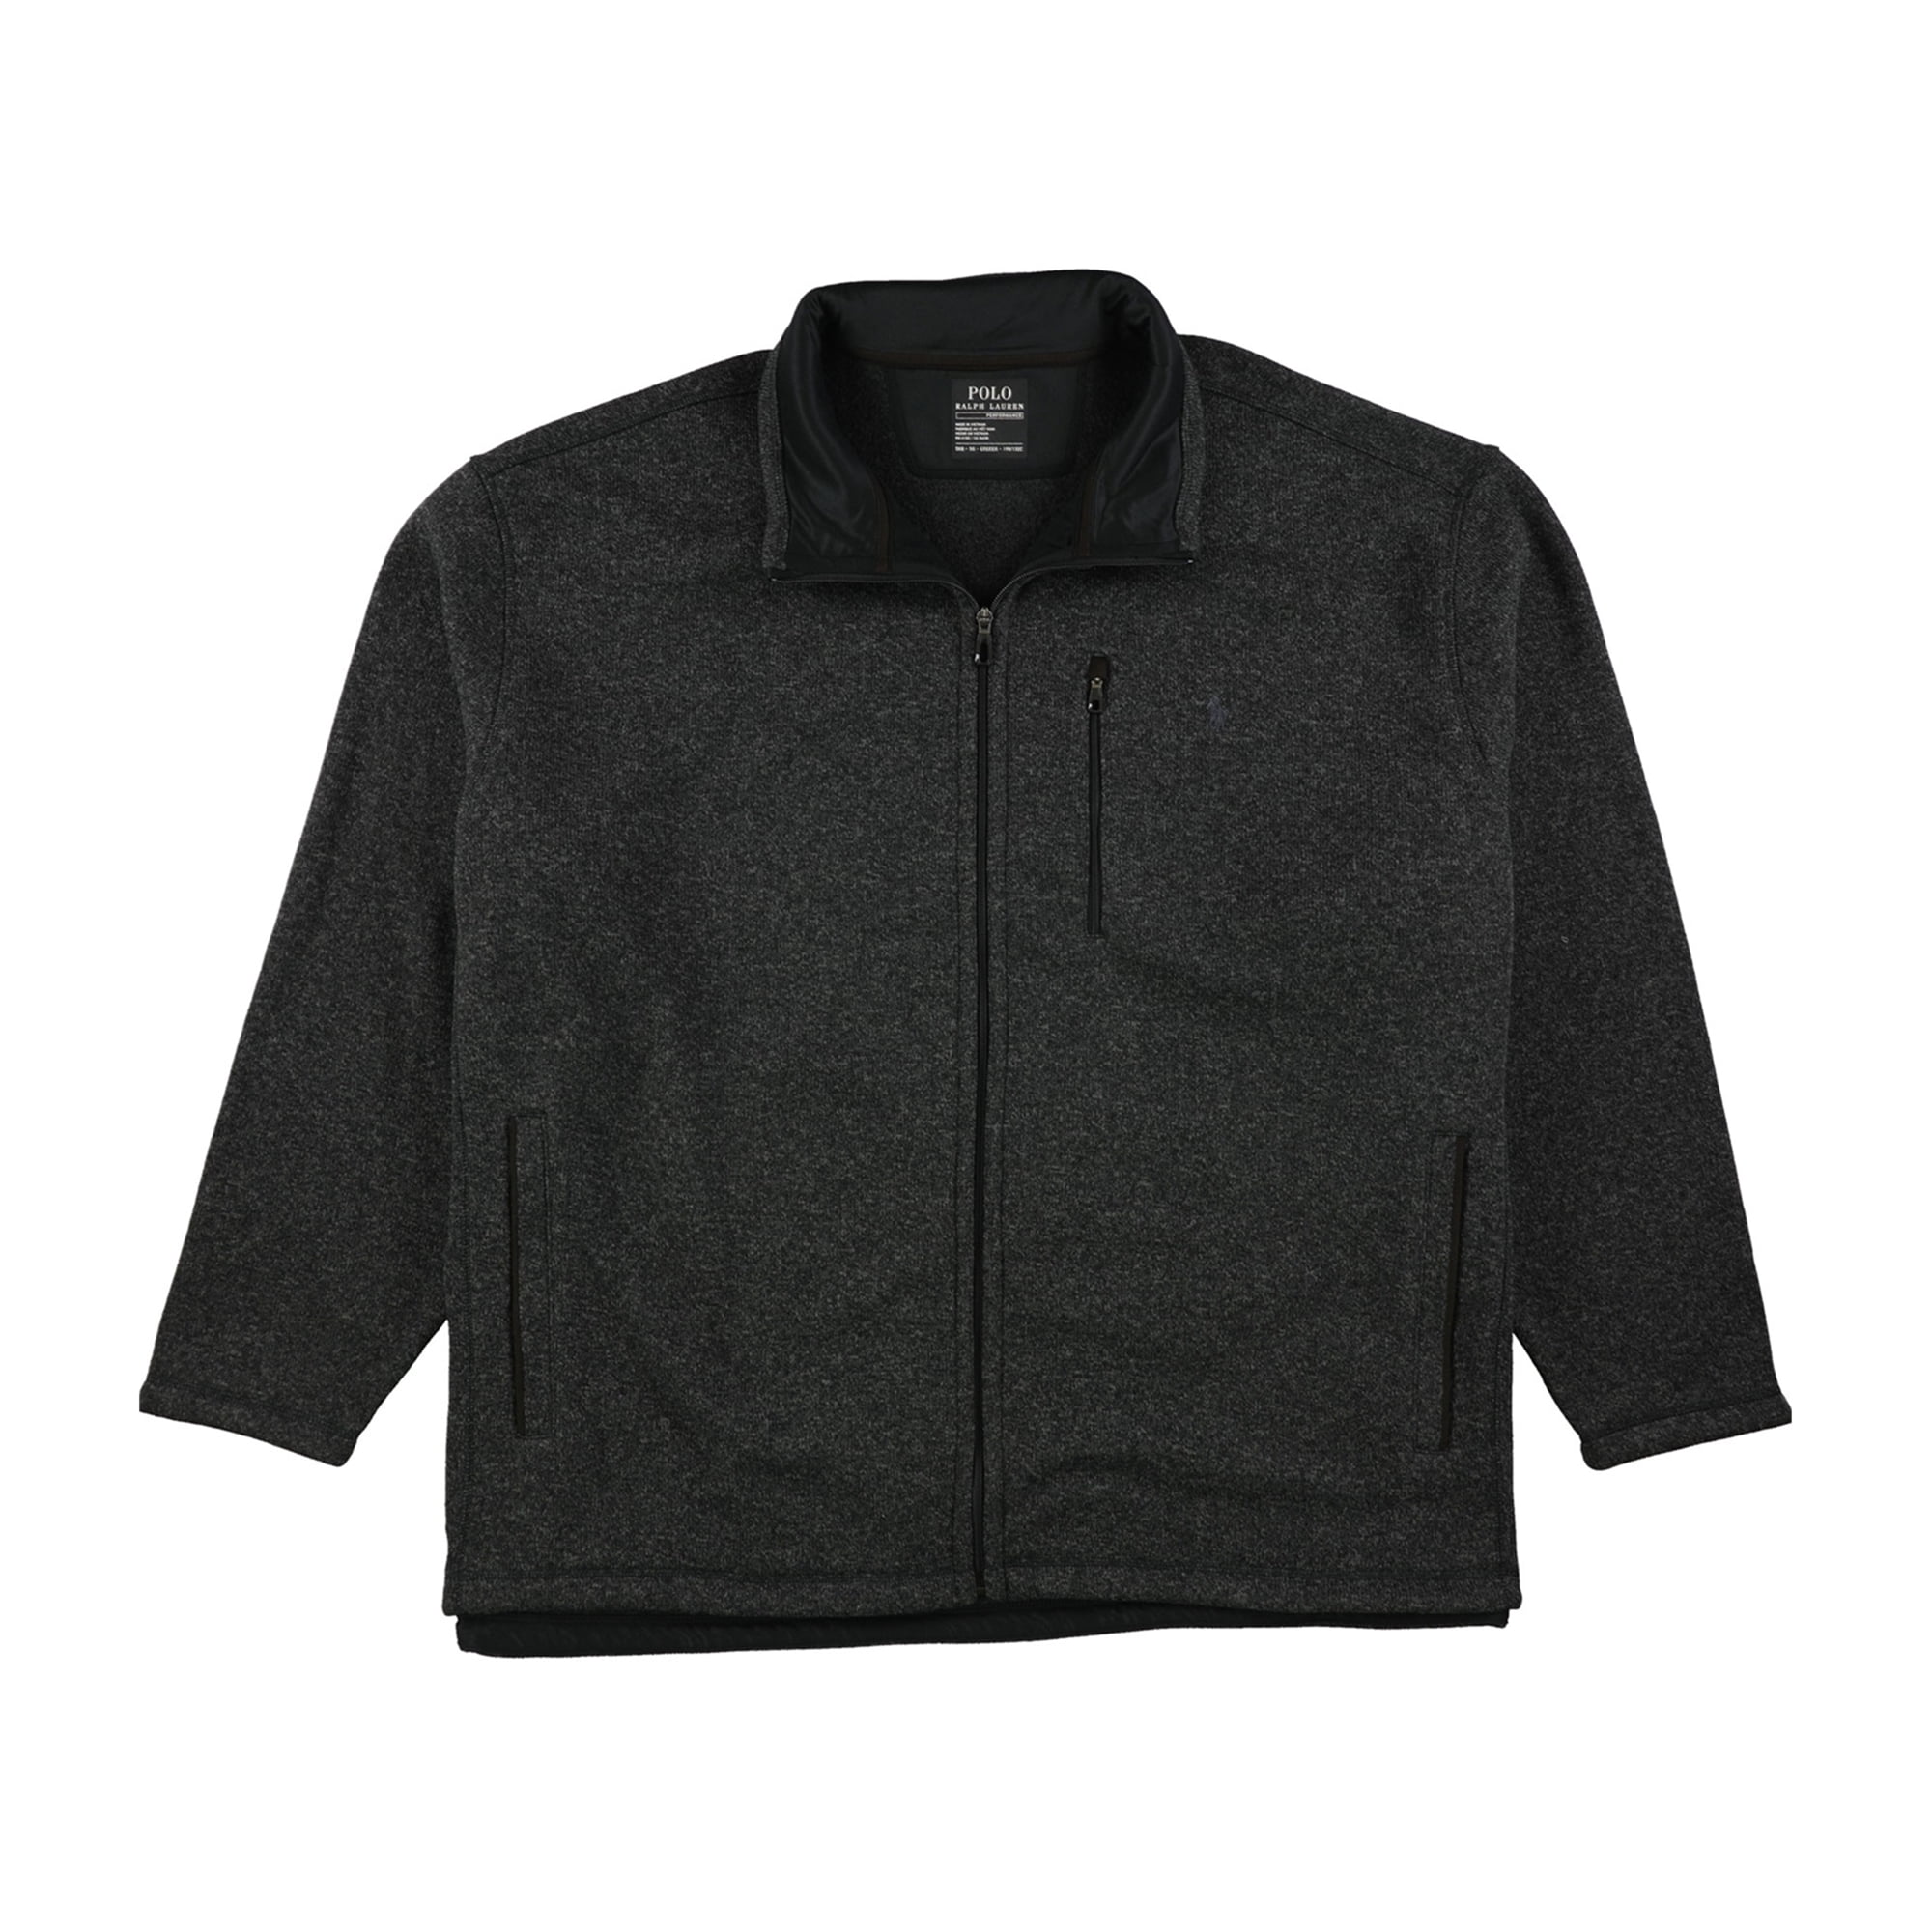 Ralph Lauren Polo Girls Full Zip Polartec Fleece Jacket Black 6X